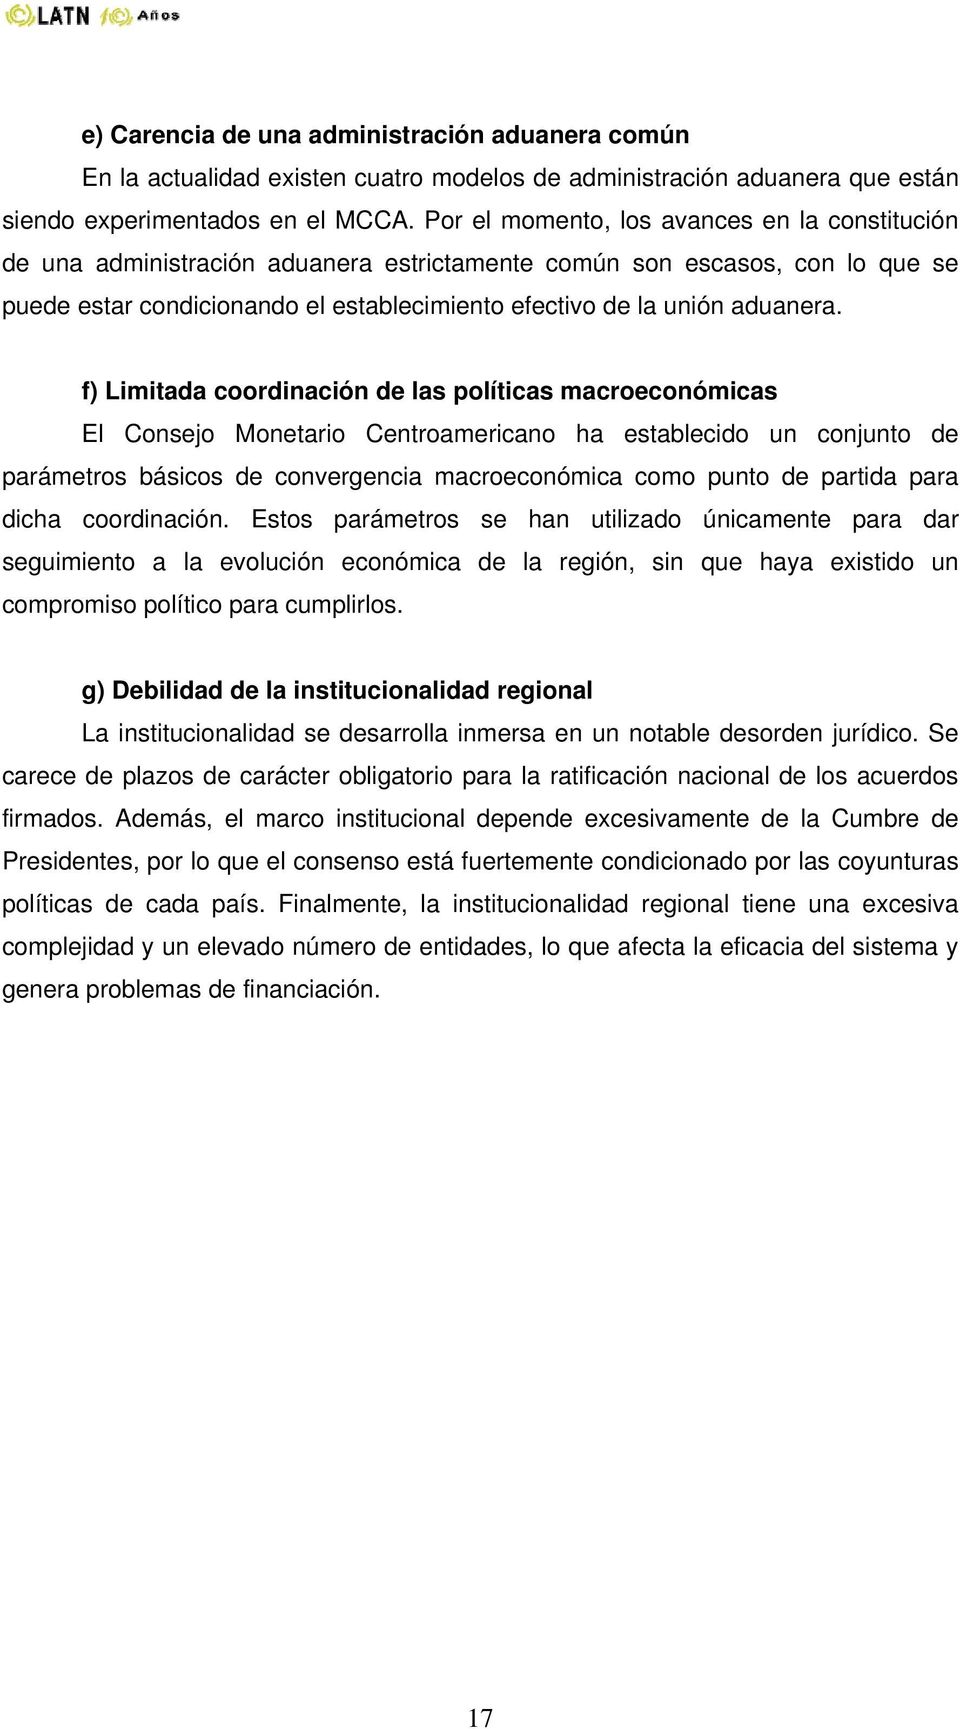 f) Limitada coordinación de las políticas macroeconómicas El Consejo Monetario Centroamericano ha establecido un conjunto de parámetros básicos de convergencia macroeconómica como punto de partida